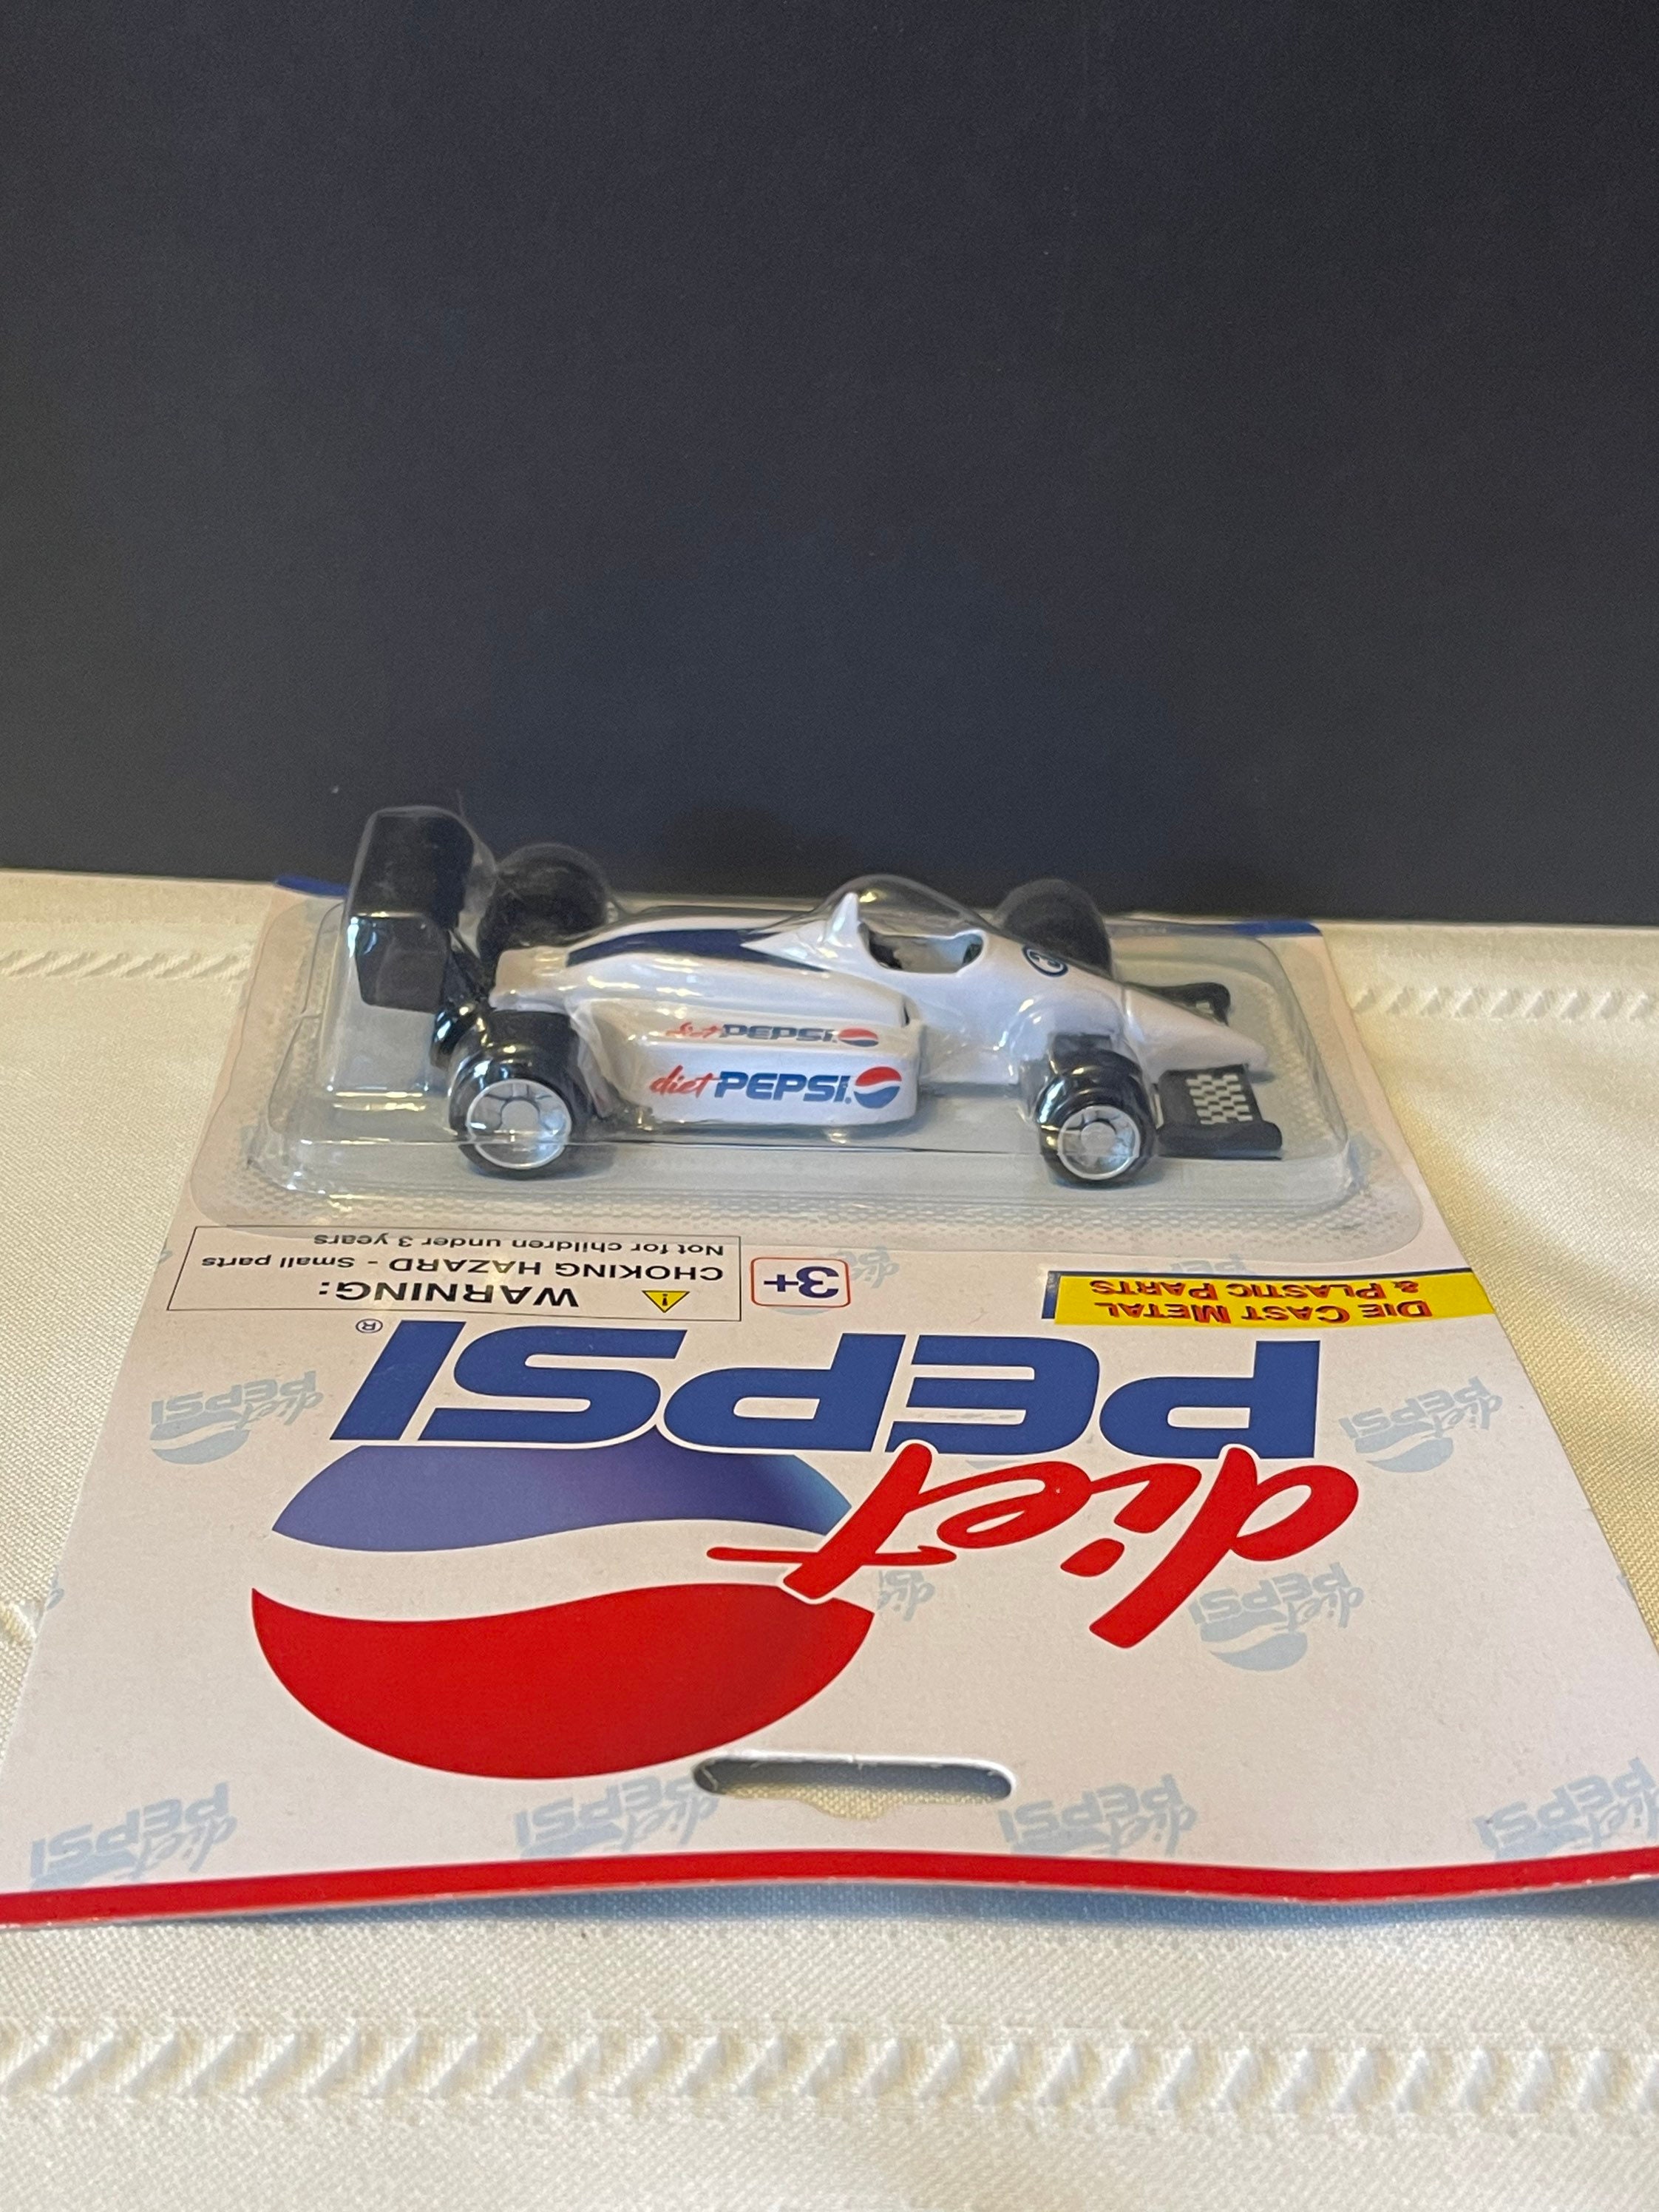 Diet Pepsi Die-Cast Cars - Van & Indy Racing Car NEW SEAL - AGING GLUE